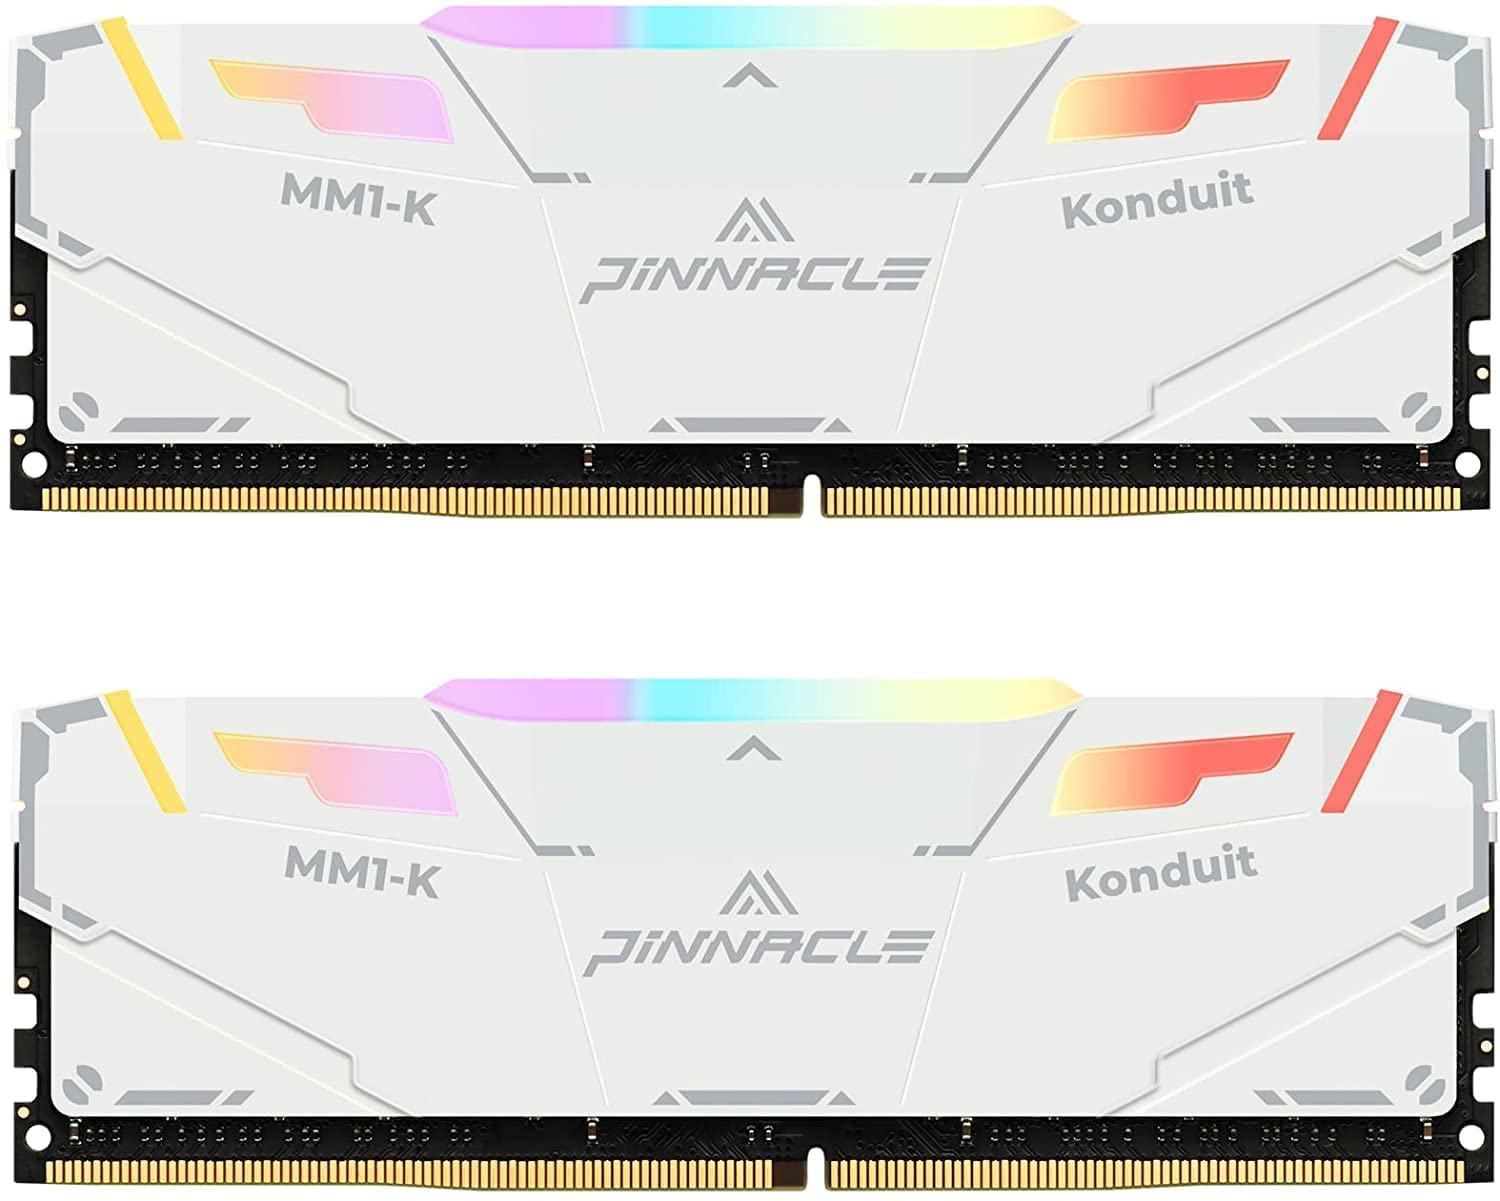 Timetec Pinnacle Konduit RGB DDR4 3200MHz PC4-25600 XMP2.0 Overclocking 1.35V デスクトップ用メモリ ハイスピードタイプ (3200Mhz 32GB Kit(16GBx2枚), White)